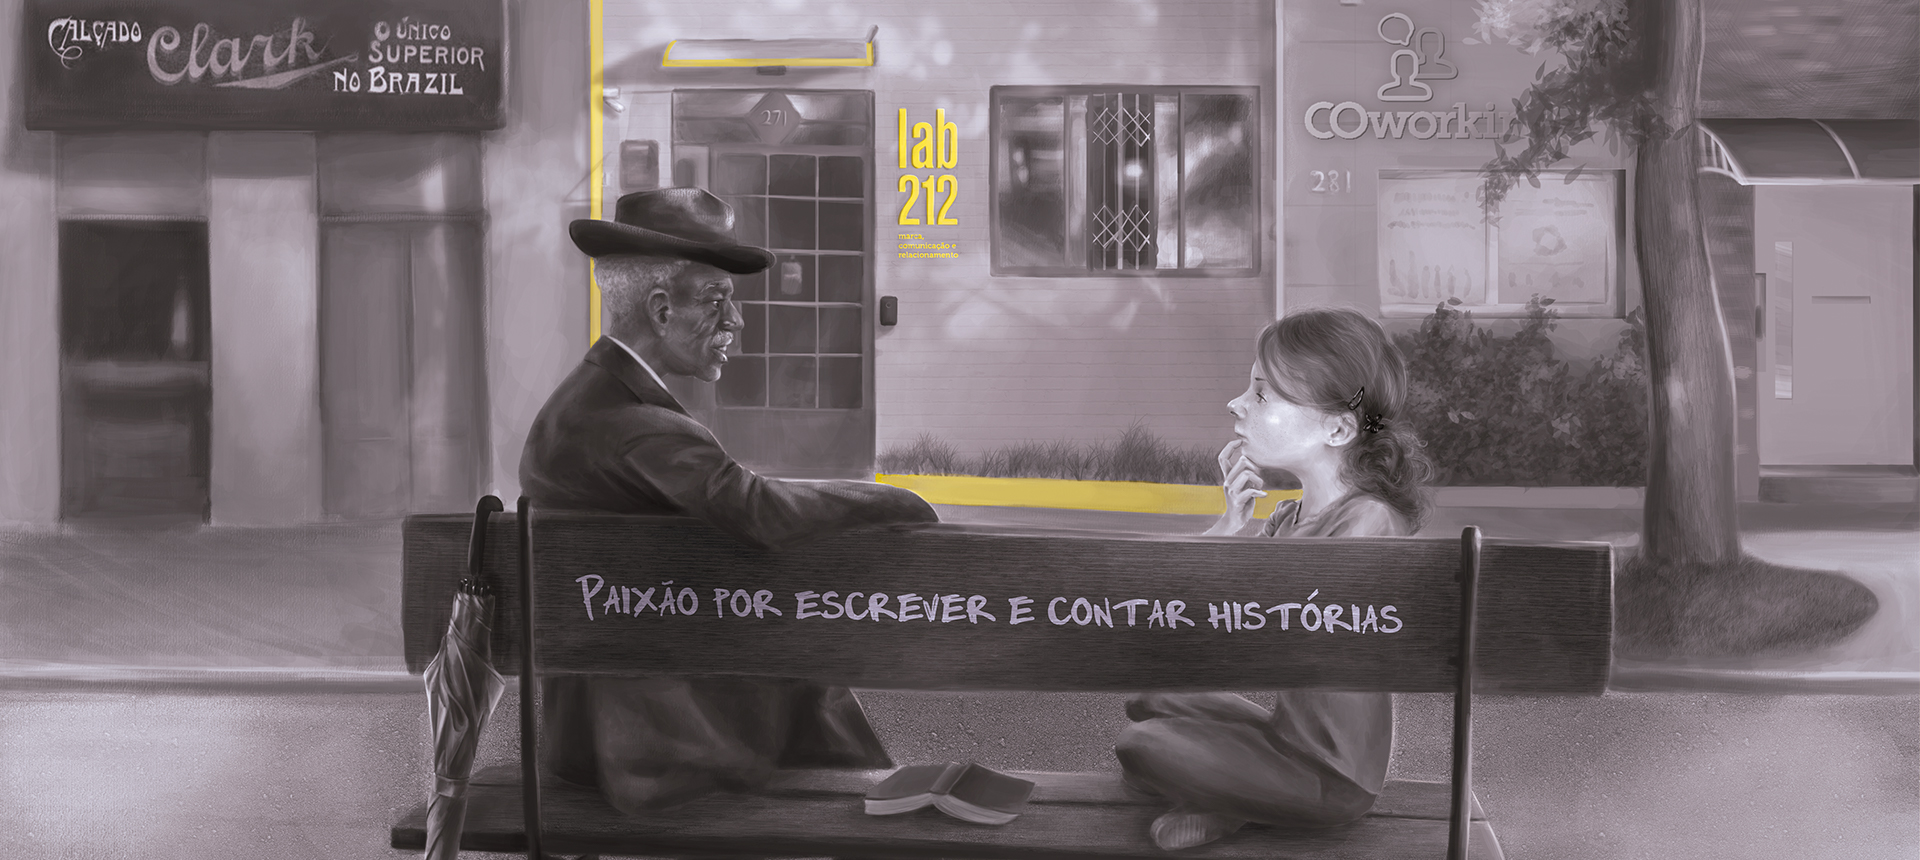 Desenho preto e branco de um senhor e uma garota sentados em um banco com a frase "Paixão por escrever e contar histórias", conversando. No fundo, há alguns comércios, dentre eles uma pequena casa com a logo "lab212" em amarelo